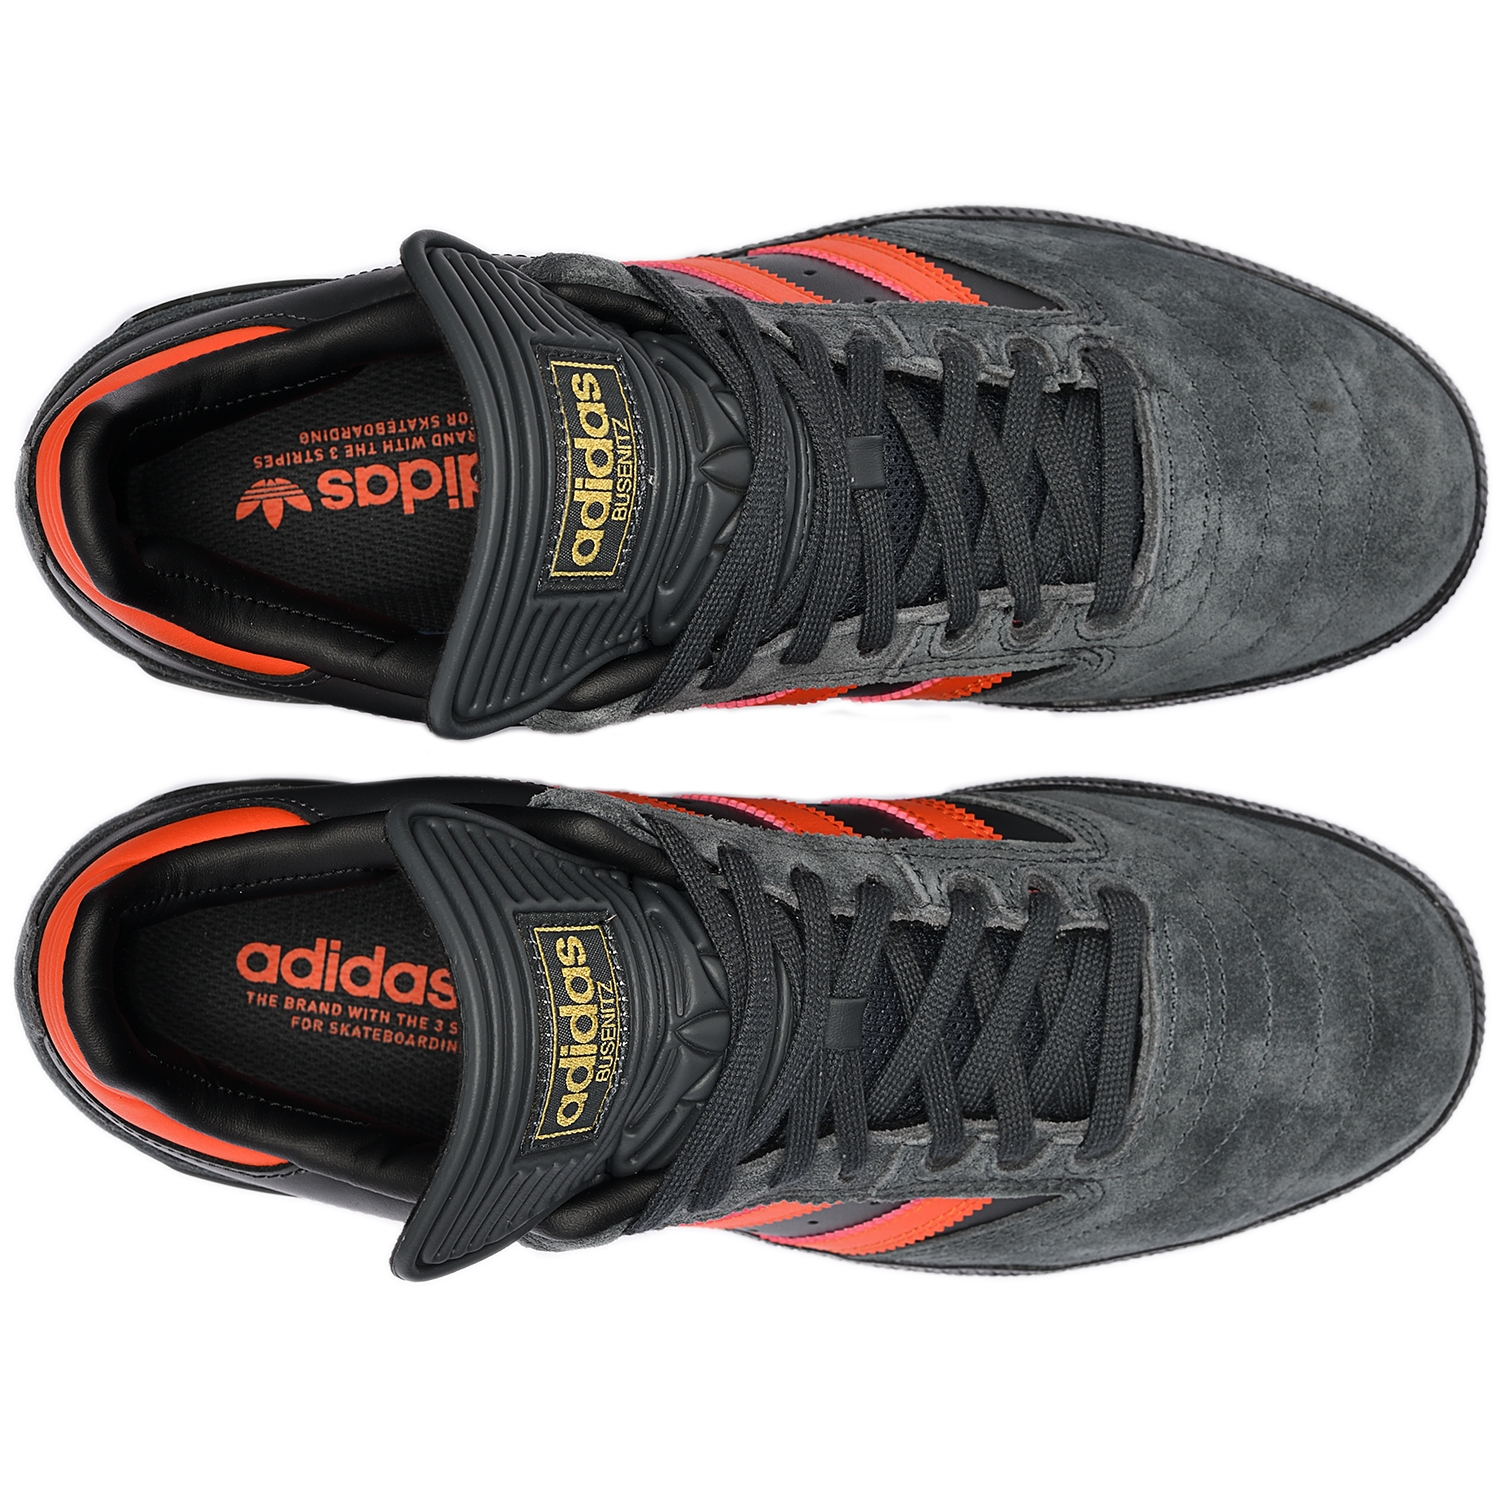 Adidas Originals Busenitz Pro San Francisco Signature City Carbon / Collegiate Orange / Core Black